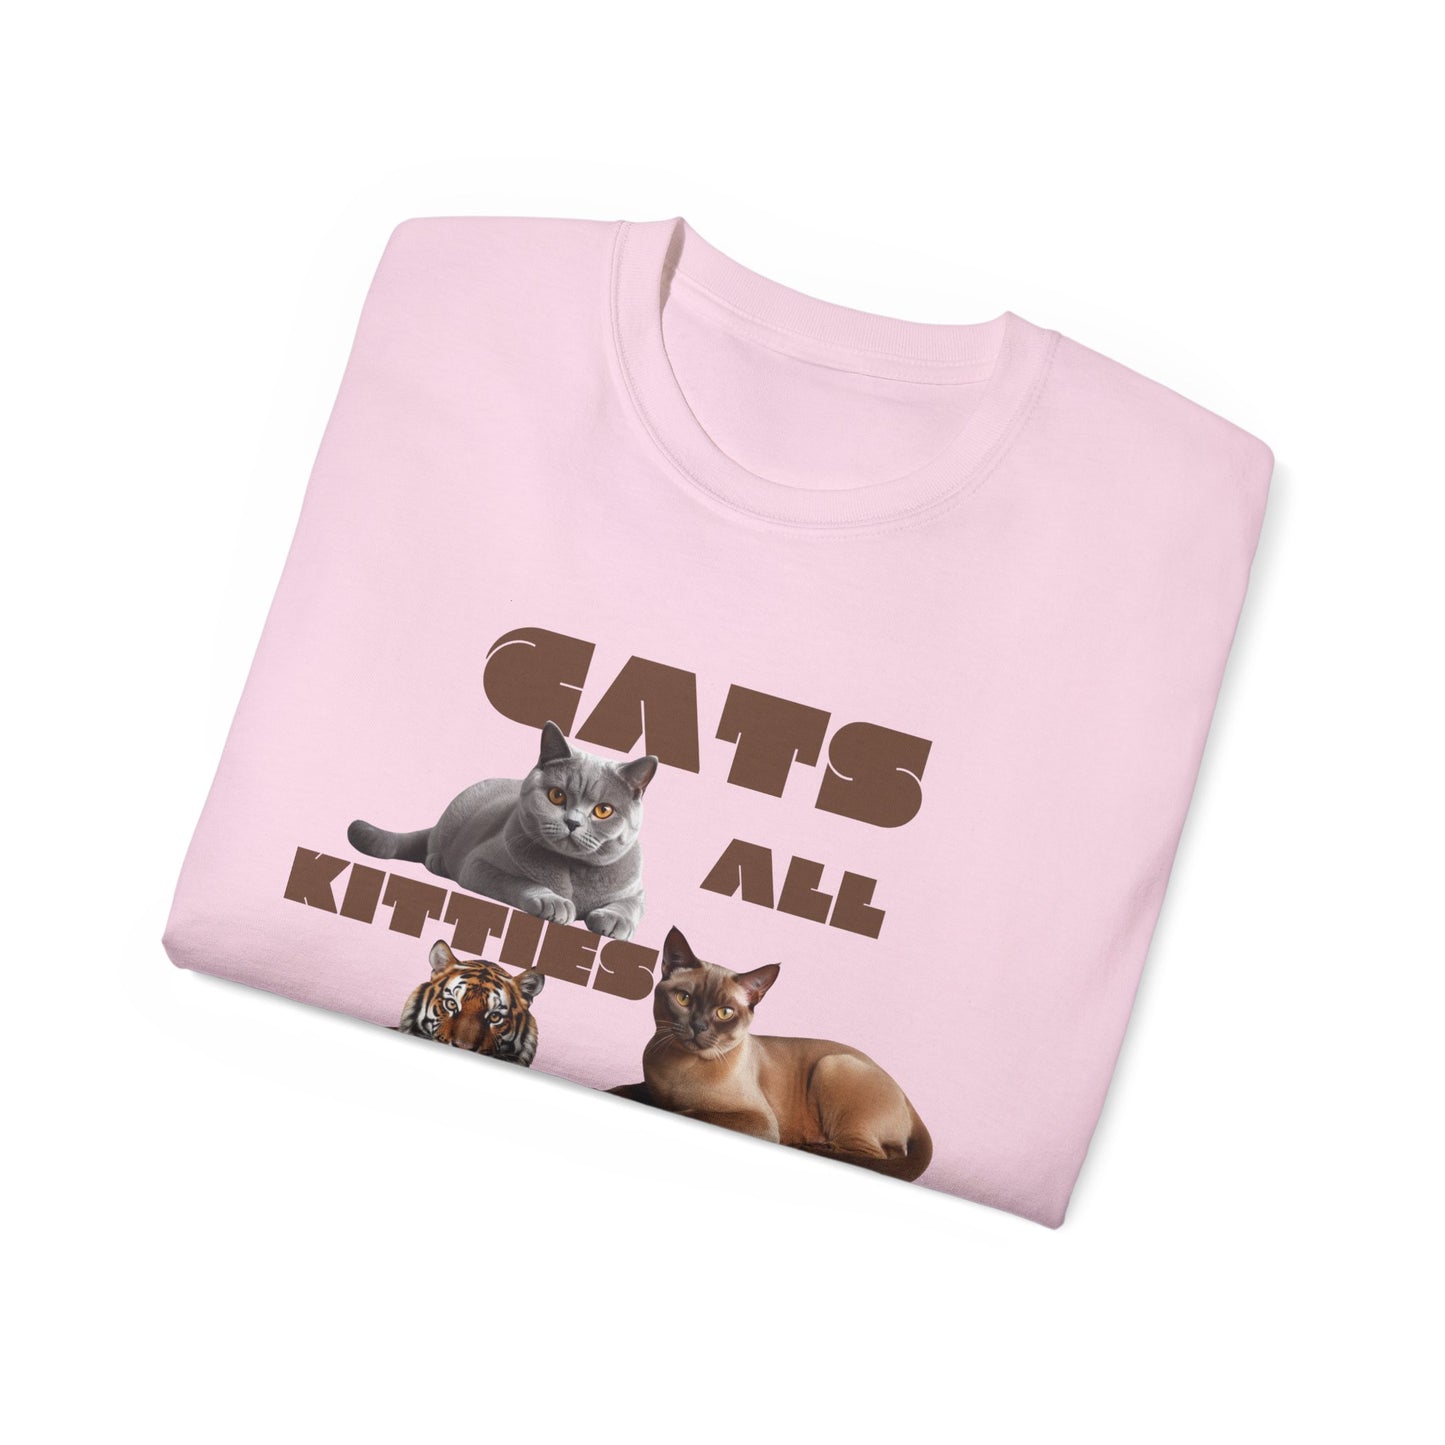 Katzen Shirt, Katzenfans aufgepasst Unisex Shirt Statement Piece, Herren T-Shit mit Aufschrift, Bio-Unisex T-Shirt, Tri-blend T-Shirt, Tee